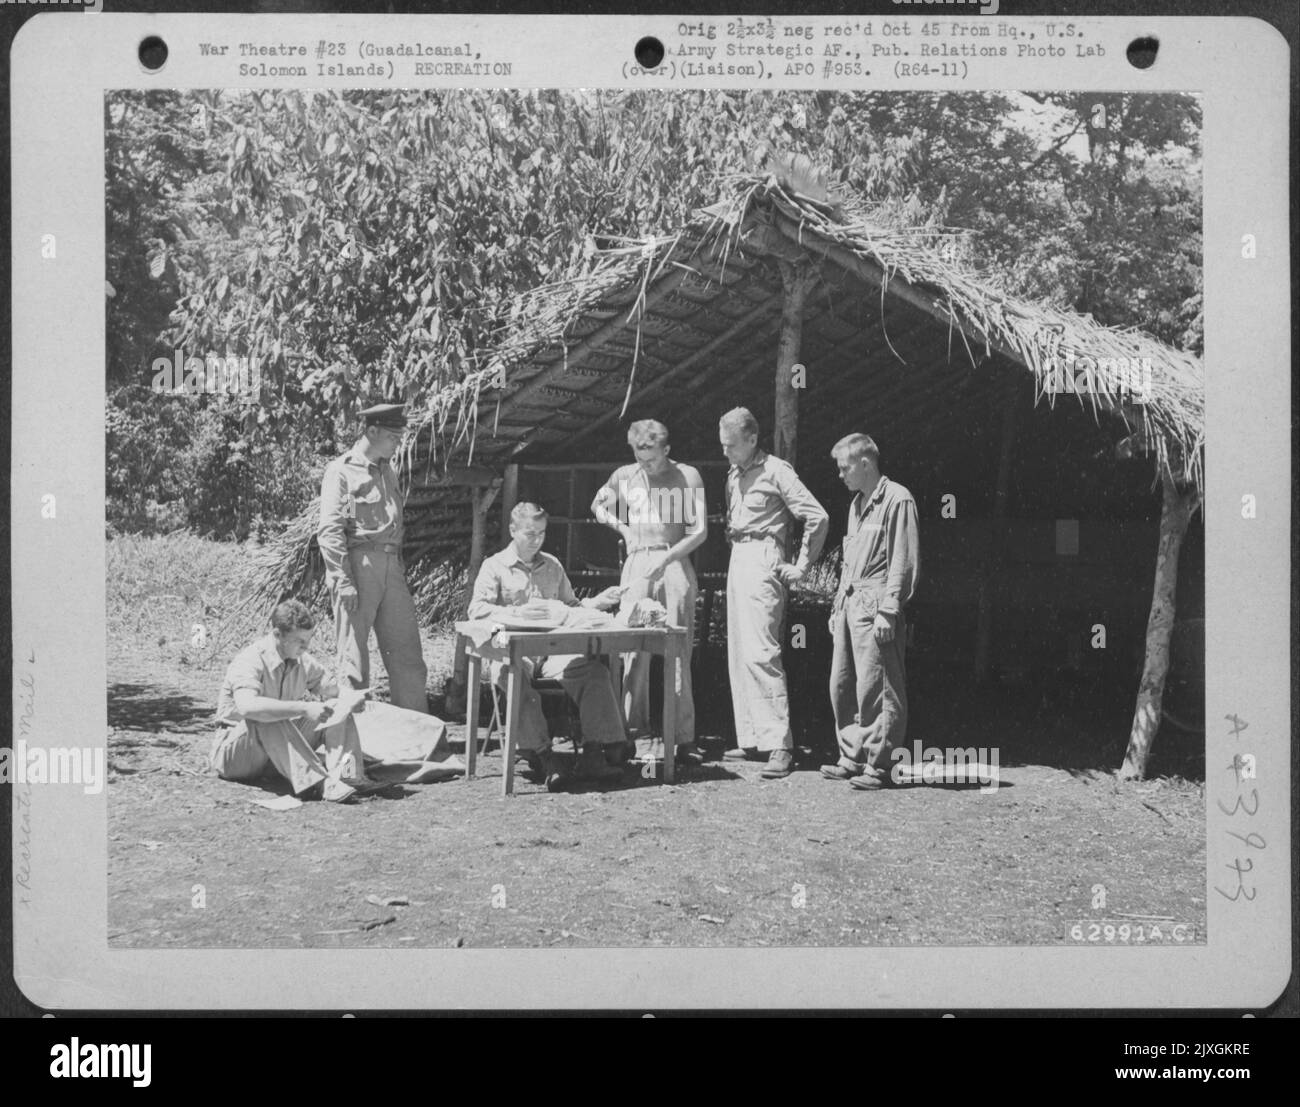 Le personnel de la Force aérienne attend avec impatience la distribution de courrier à Guadalcanal, îles Solomom, octobre 1942. Banque D'Images